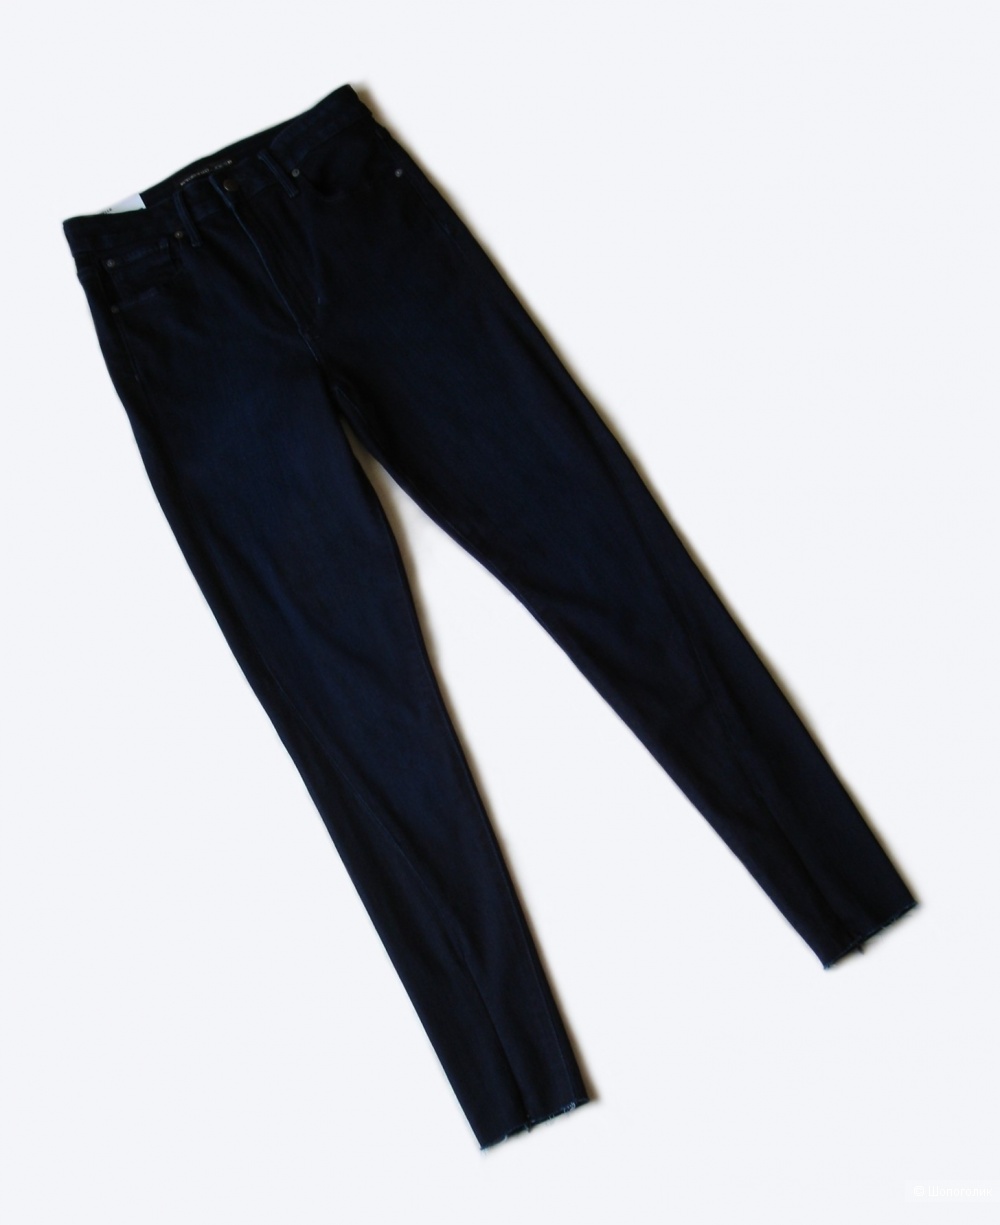 Джинсы Joe's Jeans, размер 27 (44)